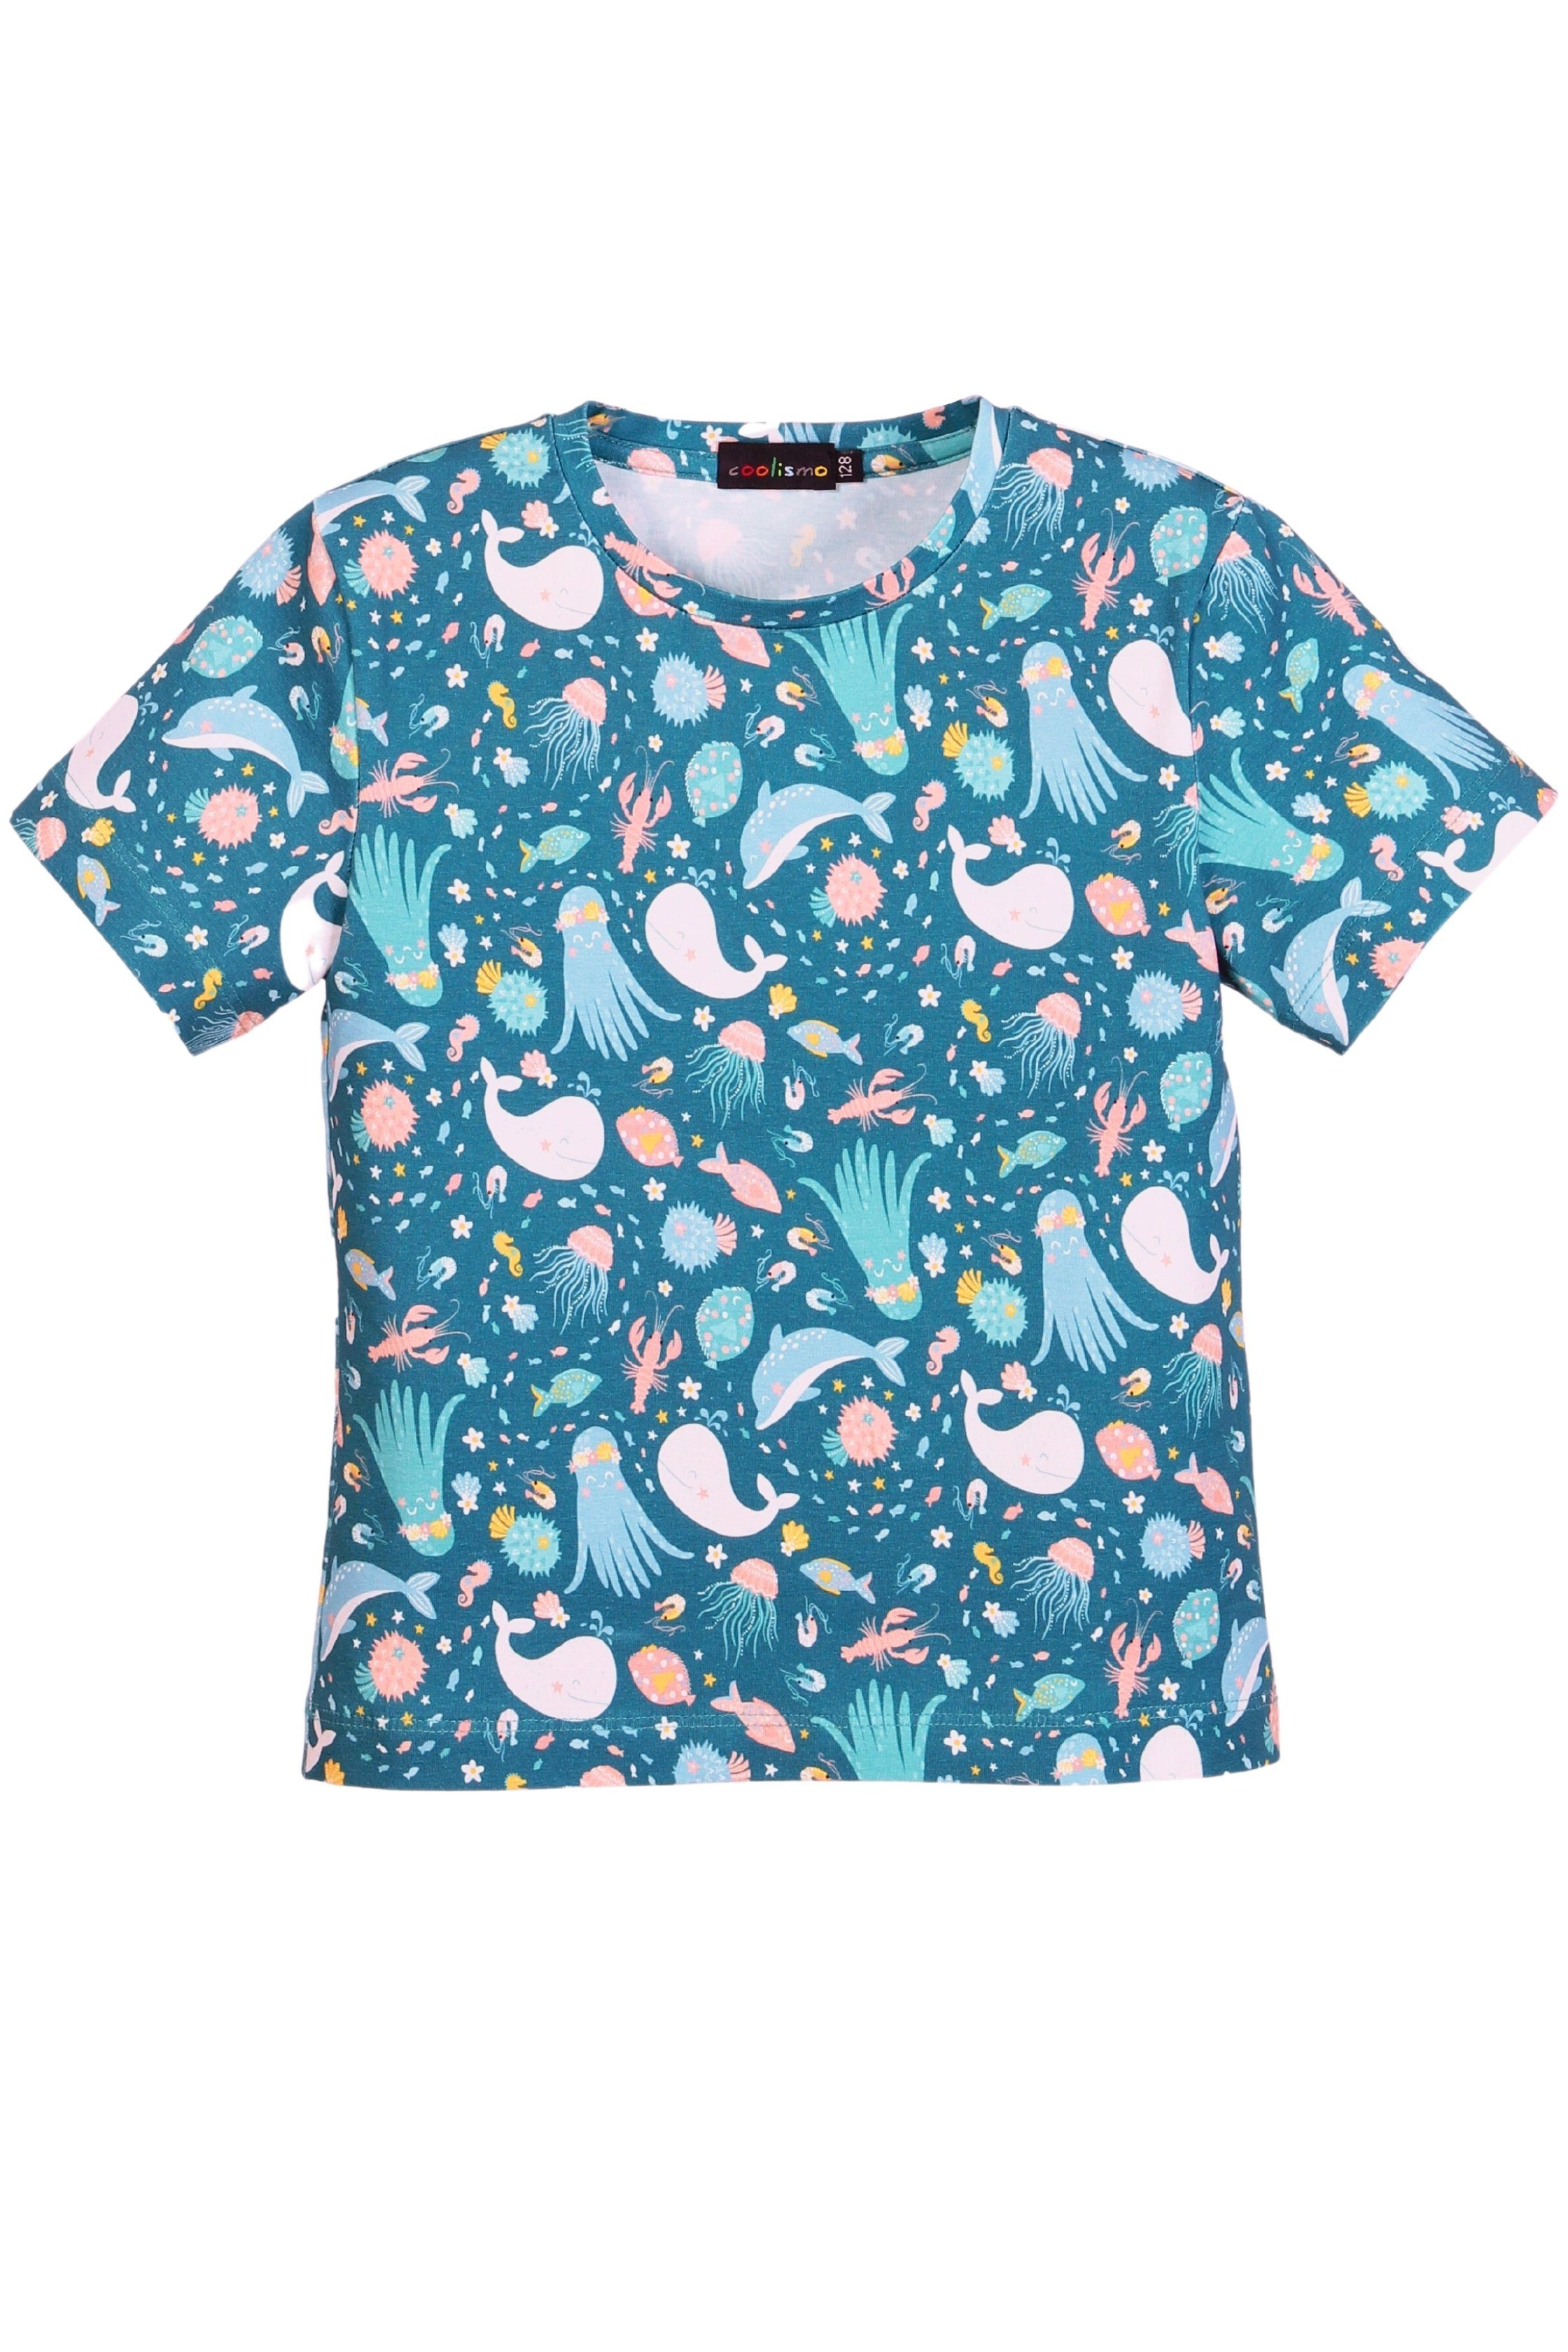 coolismo T-Shirt Print-Shirt für Produktion "Kleine Baumwolle, Alloverprint, Meereswelt" europäische Mädchen